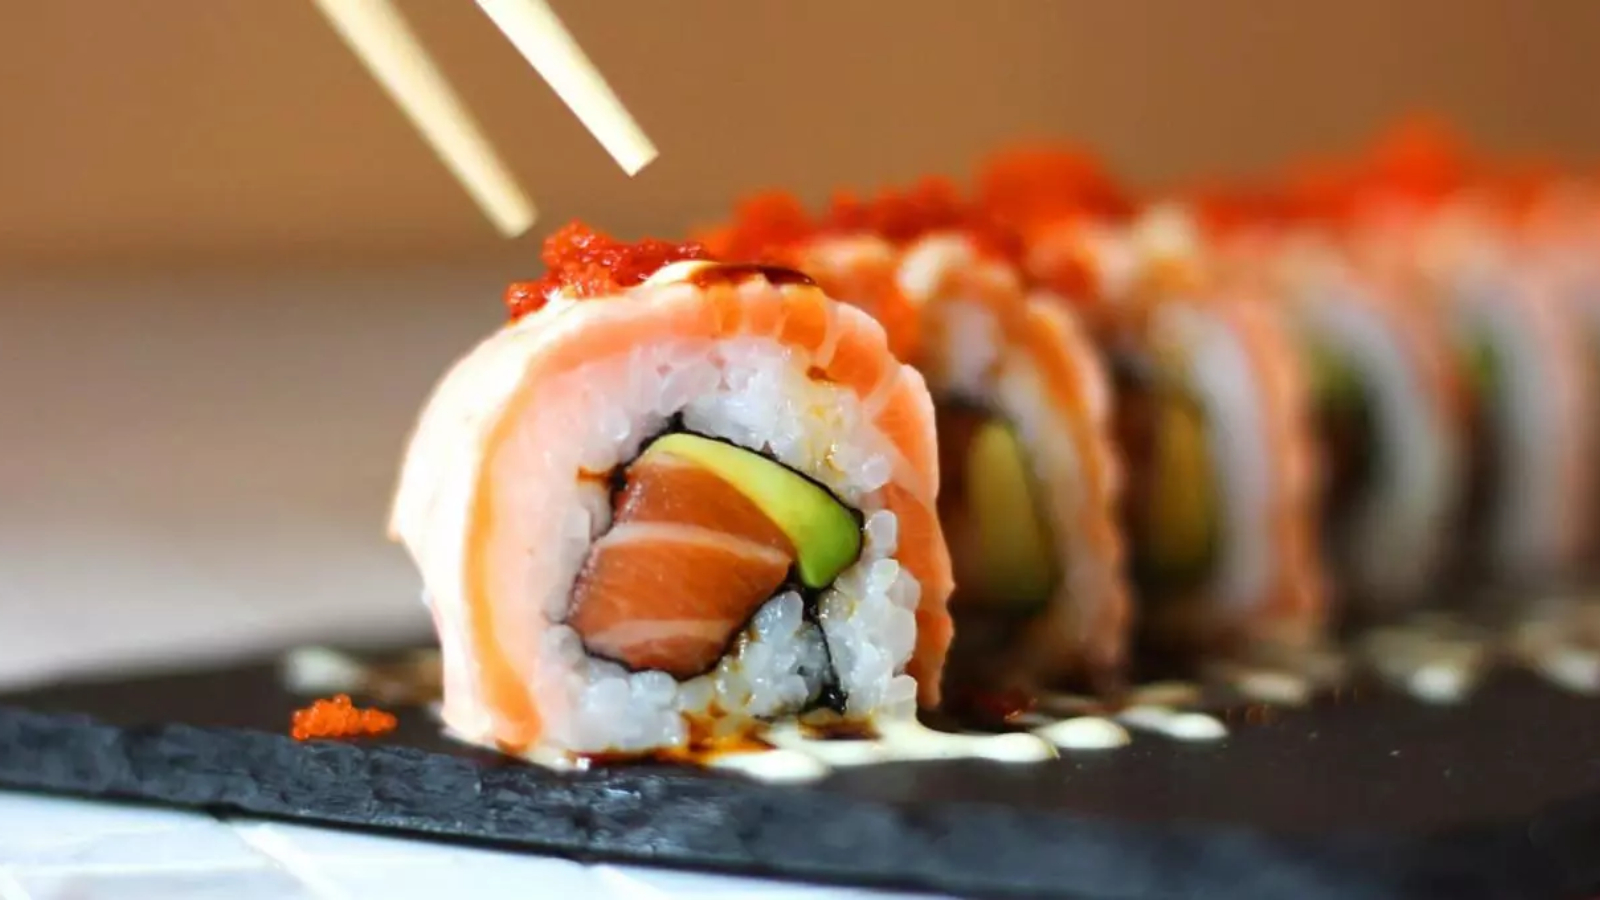 Gelinim Mutfak’ta Laz Sushi tarifi nasıl yapılır? Gelinim Mutfakta laz sushi tarifi